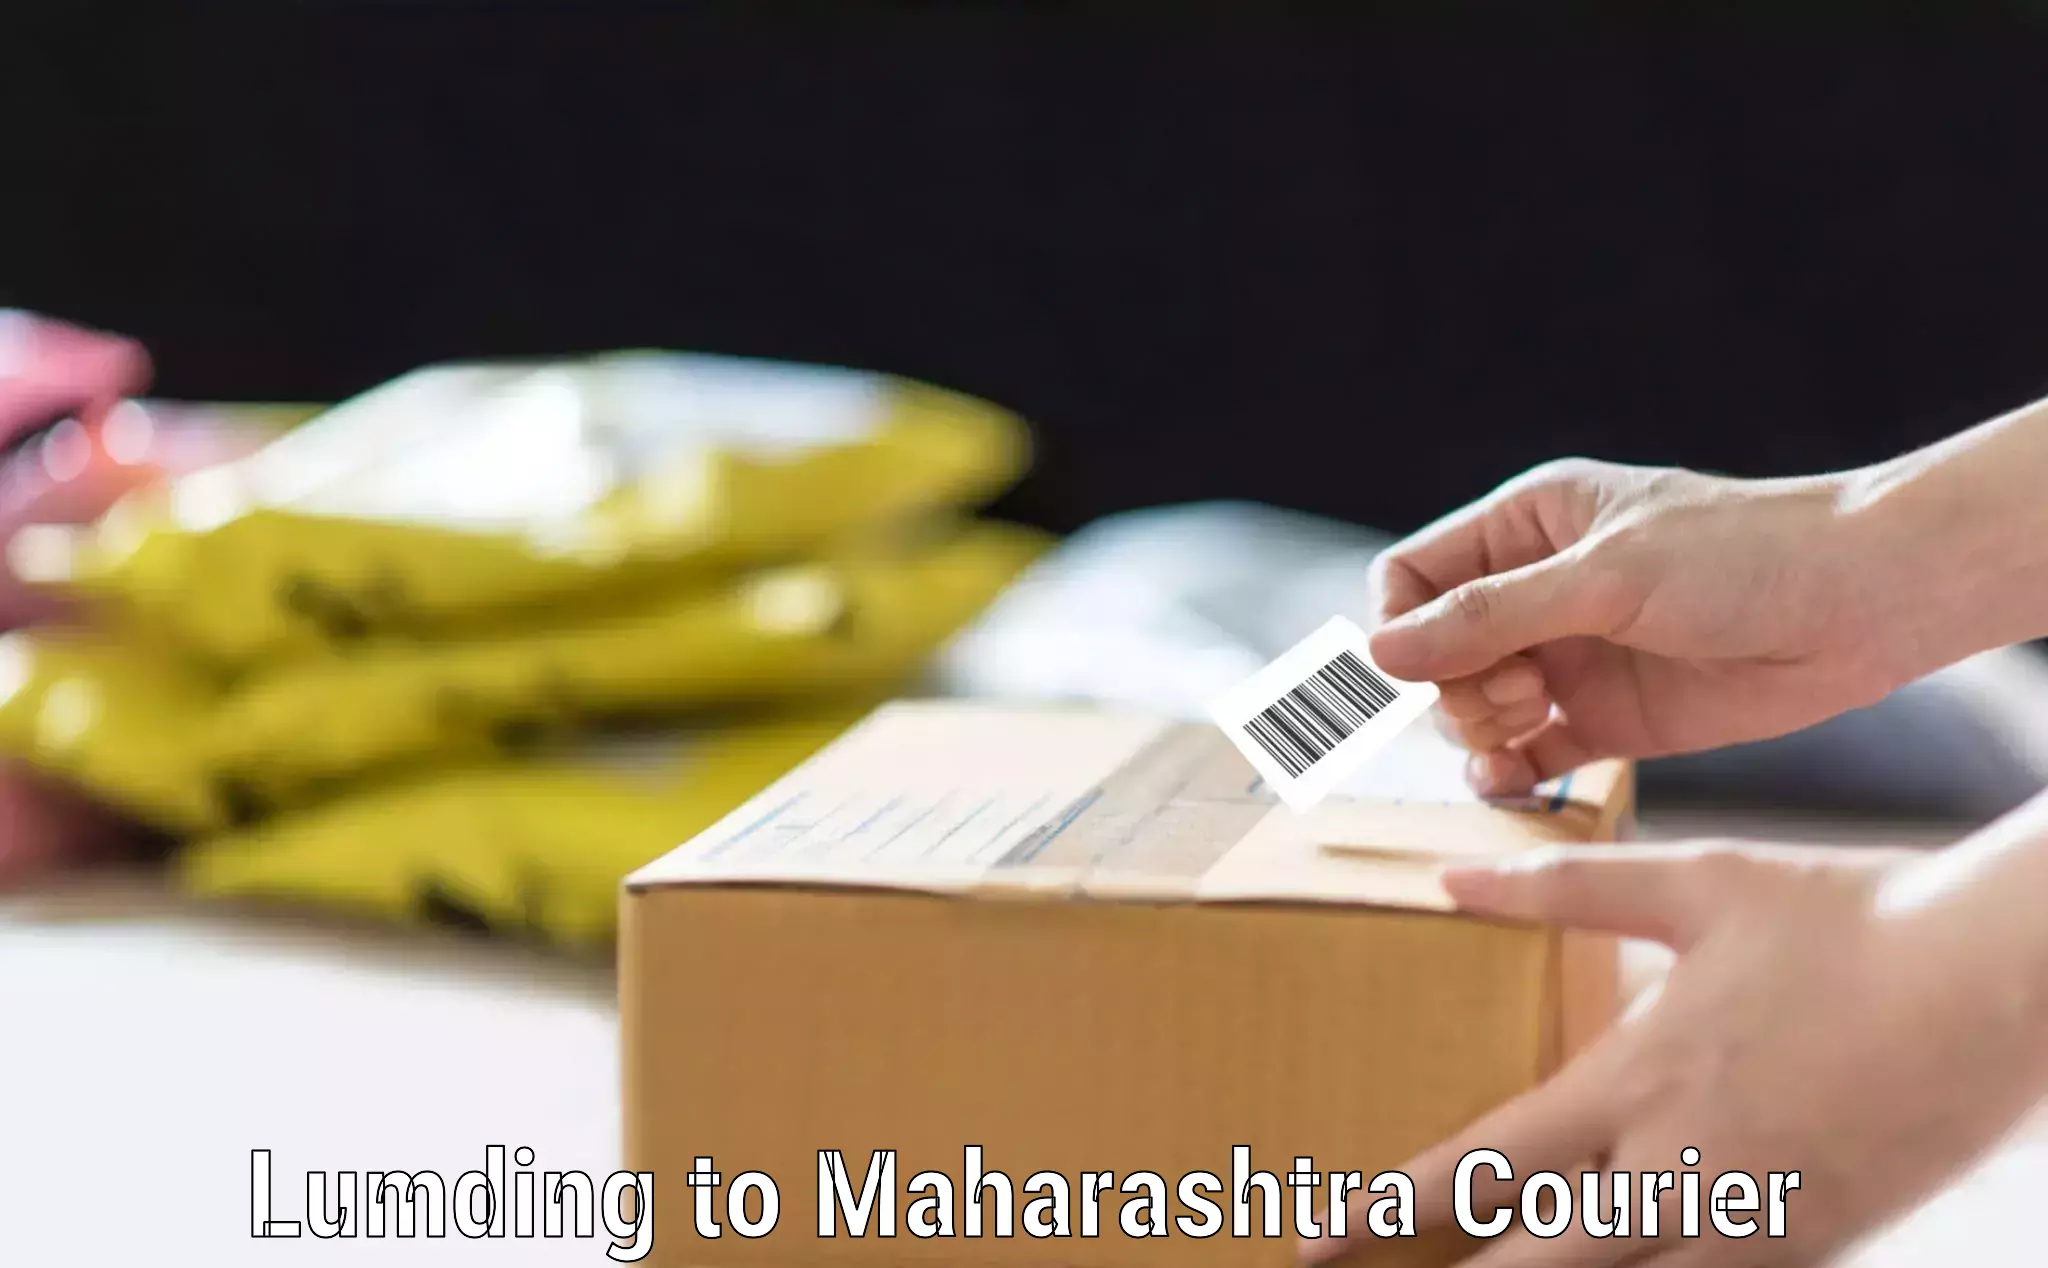 Luggage shipping management Lumding to Maharashtra